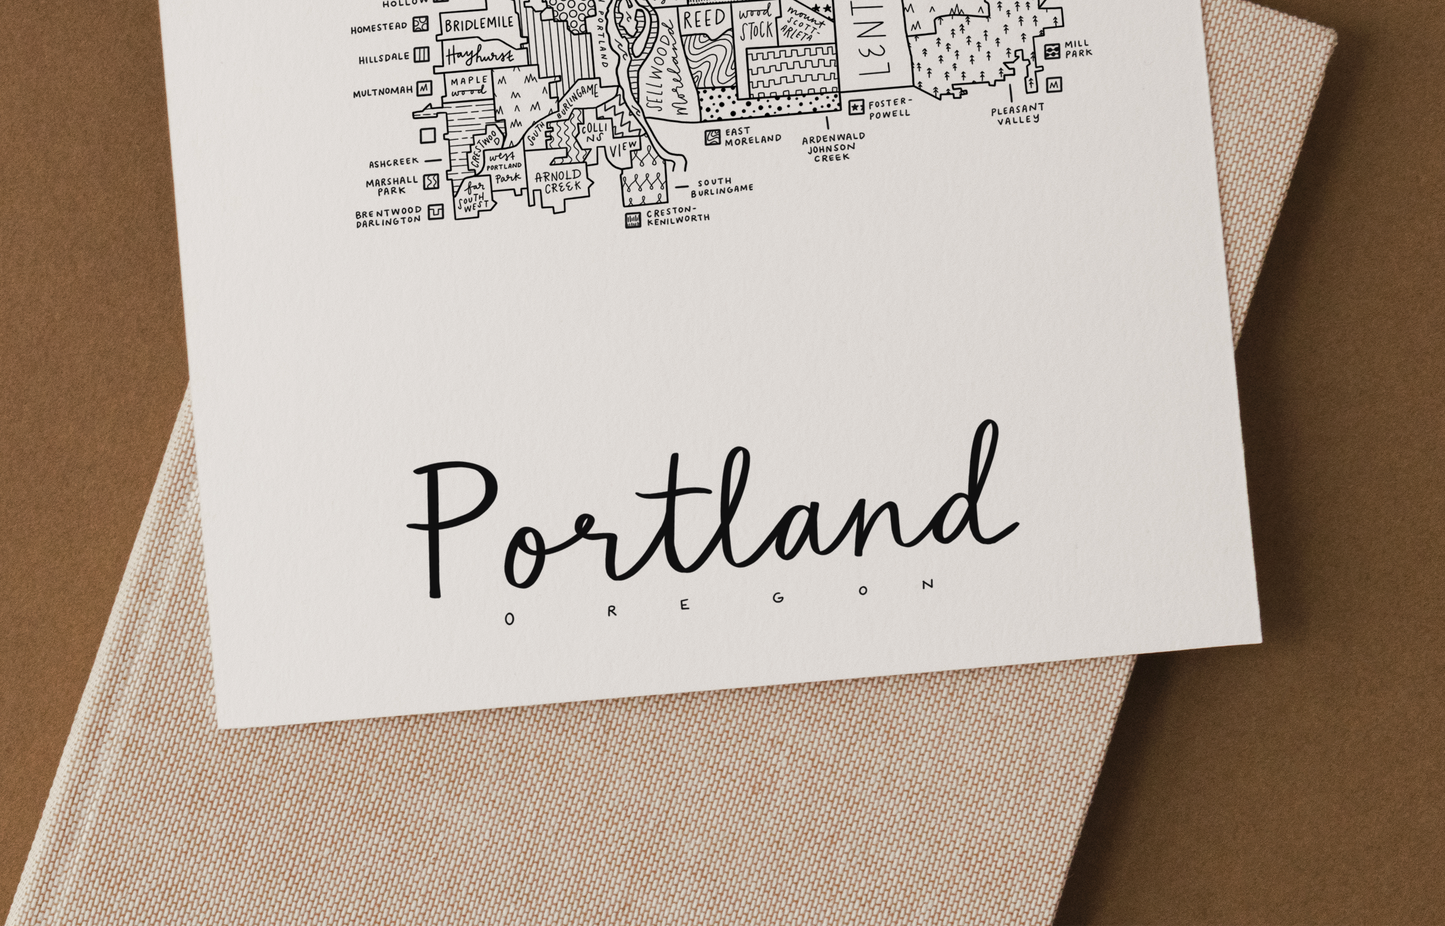 Portland Neighborhood Map Print